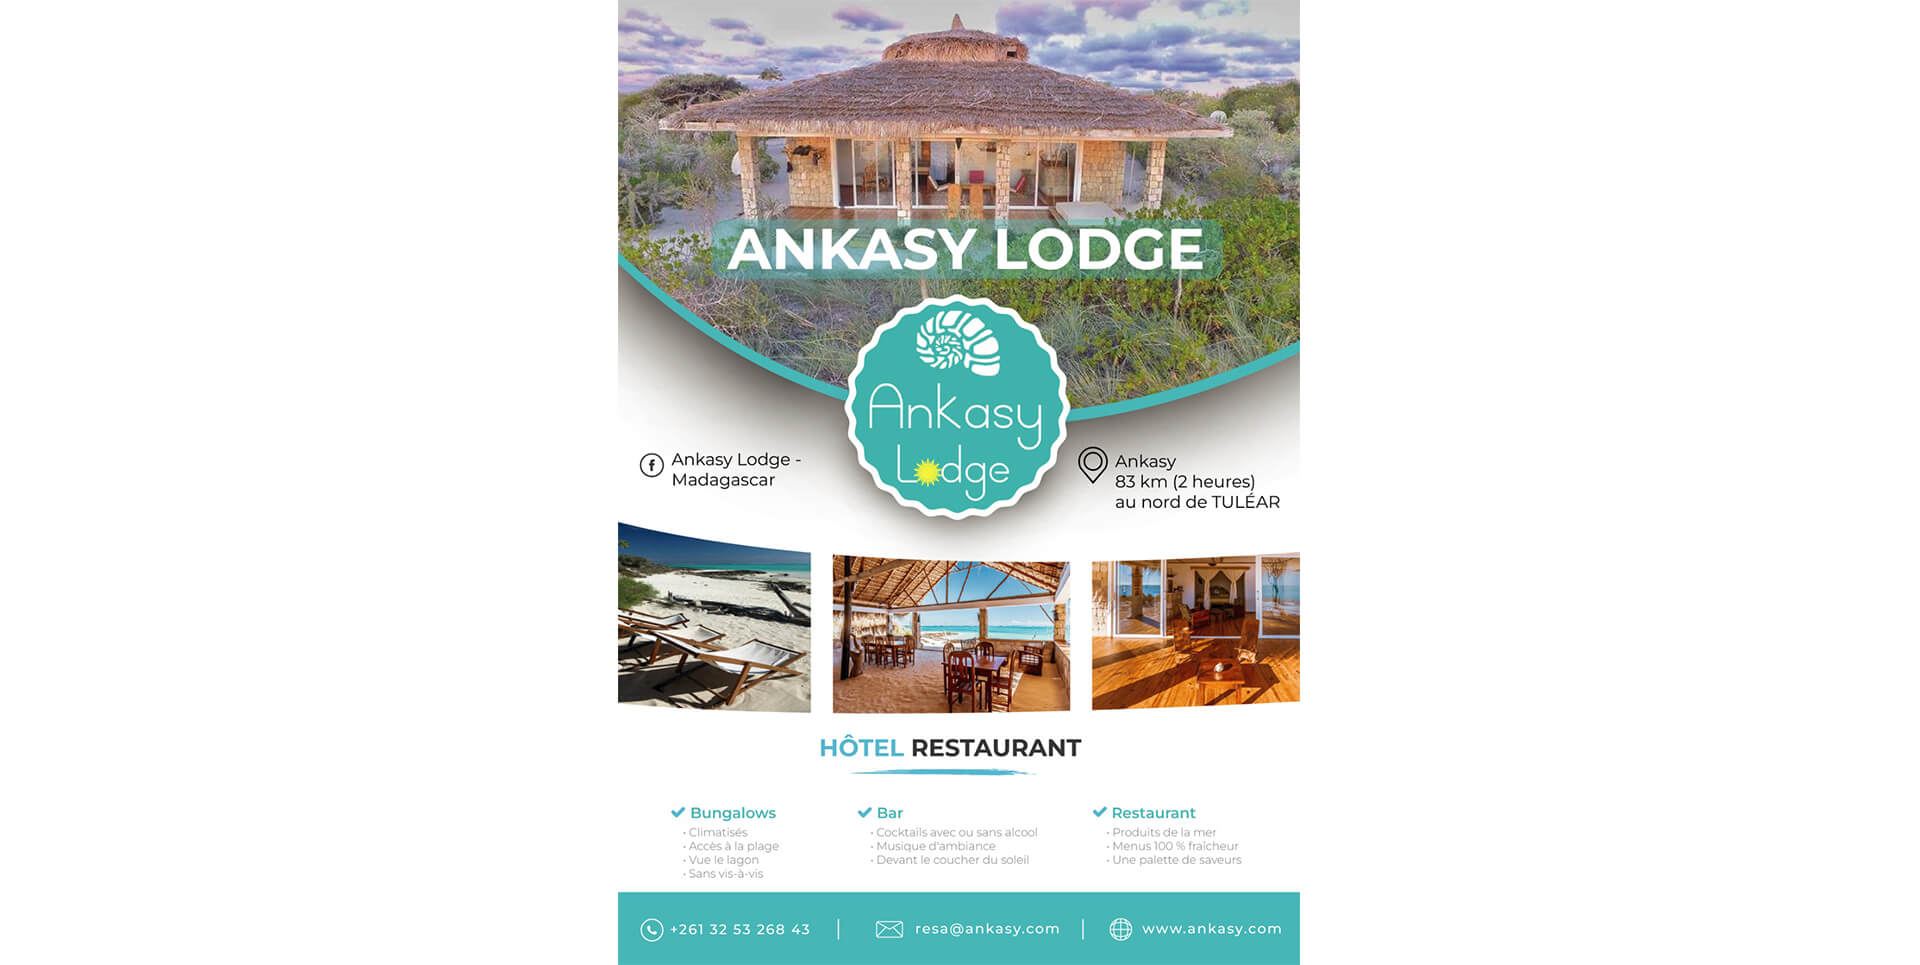 Ankasy Lodge